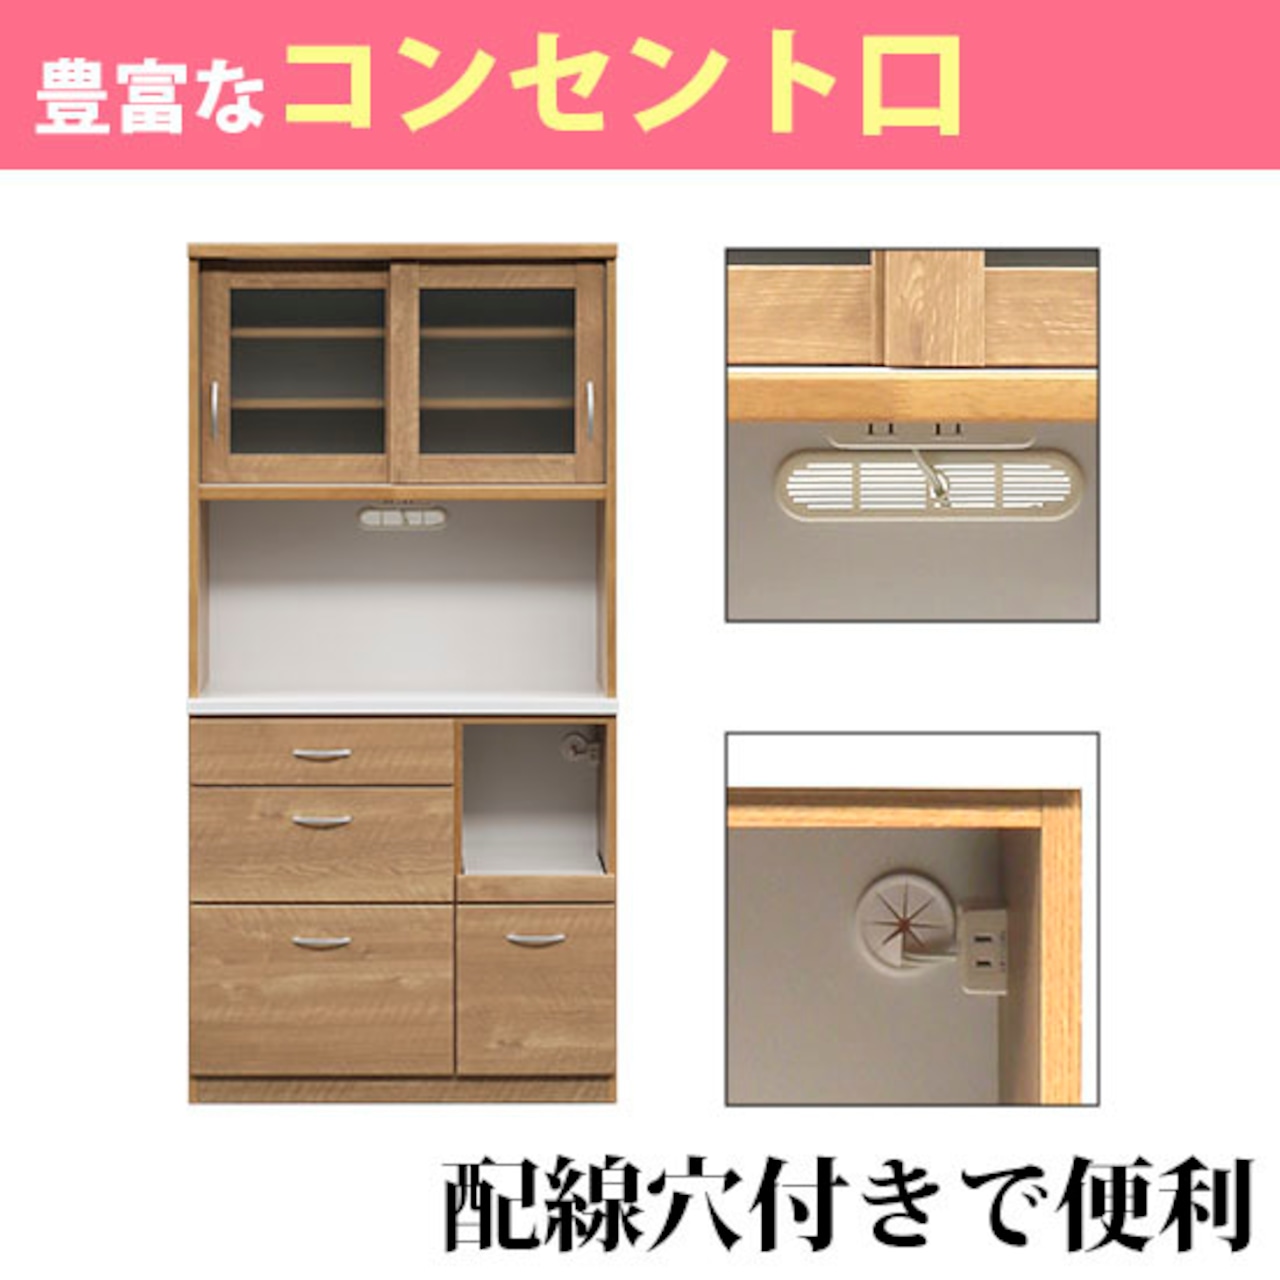 【幅90】キッチンボード 食器棚 レンジ台 収納 (全3色)